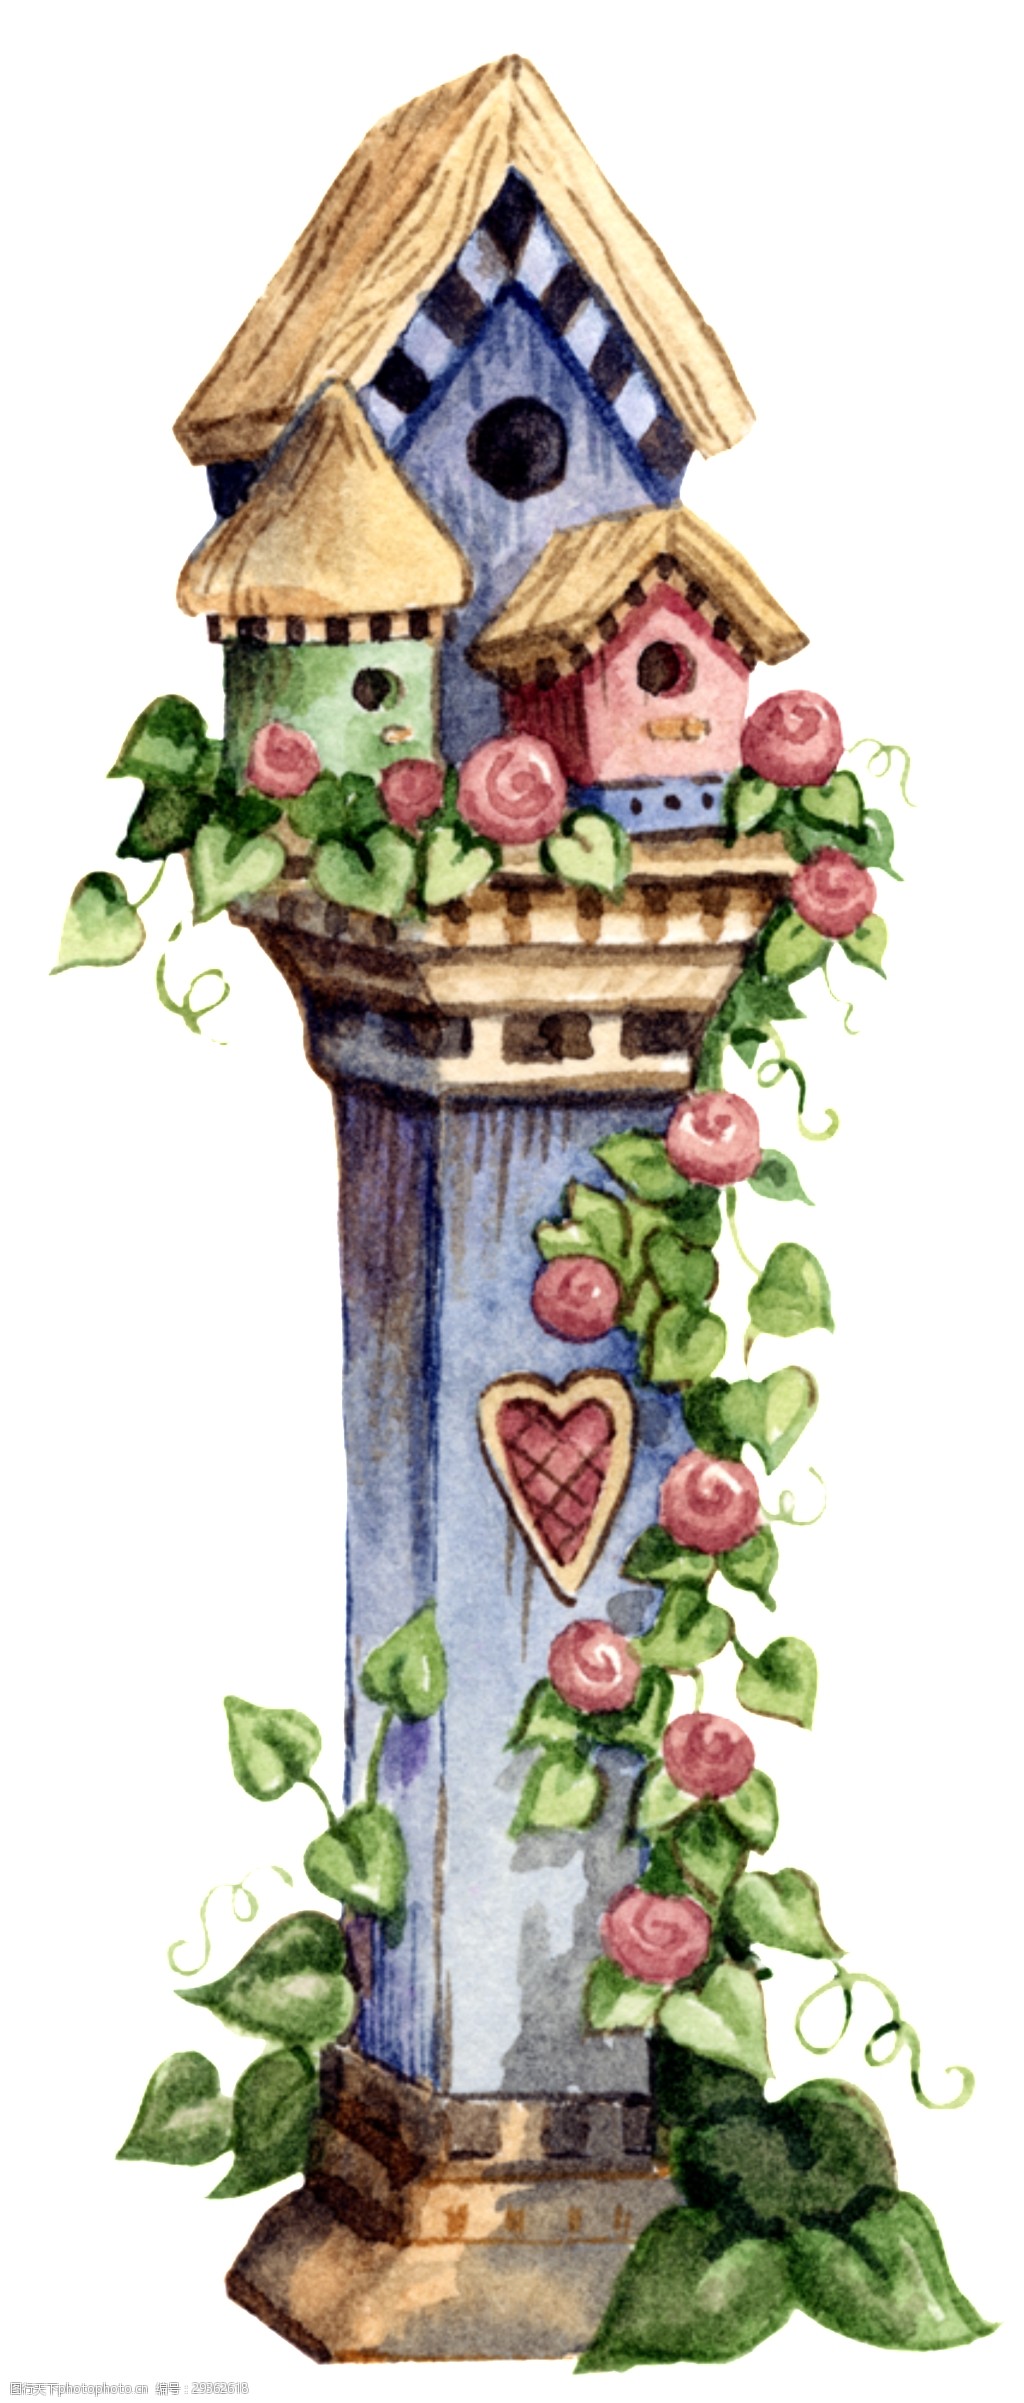 彩绘童话花朵城堡图案